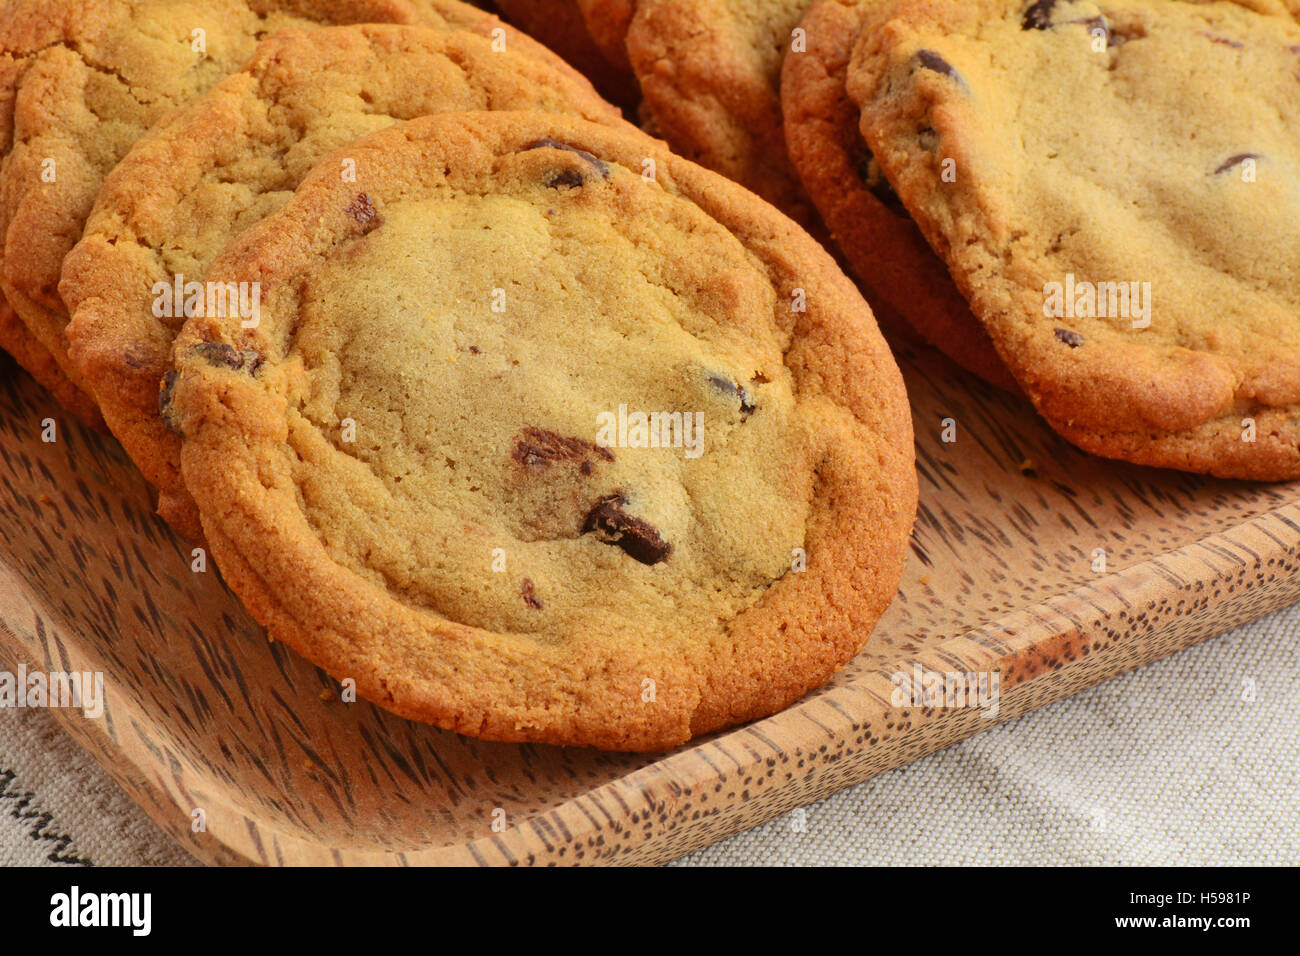 Freschi di forno biscotti con scaglie di cioccolato sul vassoio in legno in formato orizzontale. Macro con shallow DOF. Focus sulla parte anteriore cookie. Foto Stock